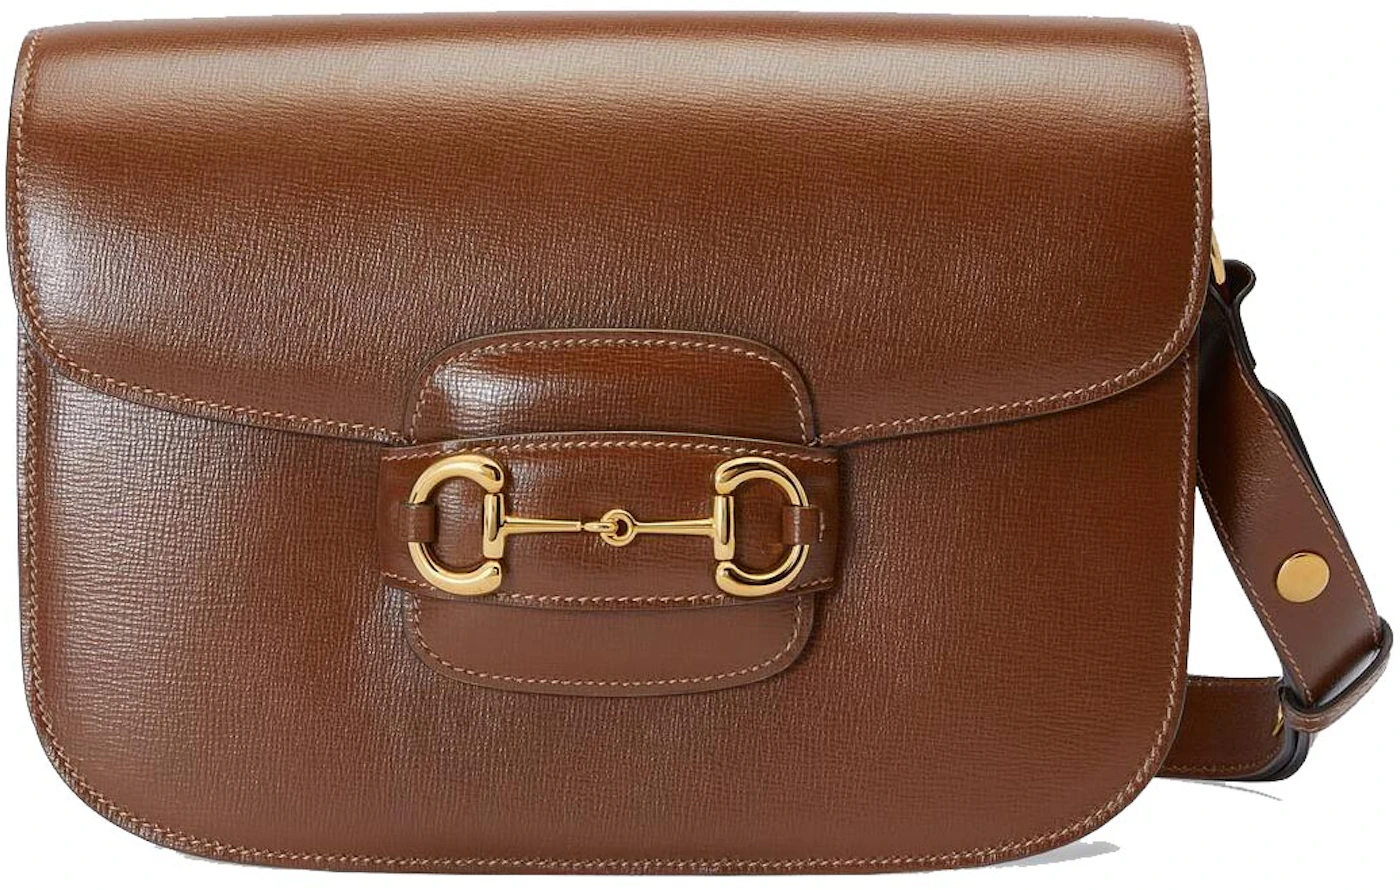 Gucci Horsebit 1955 Shoulder Bag Brown